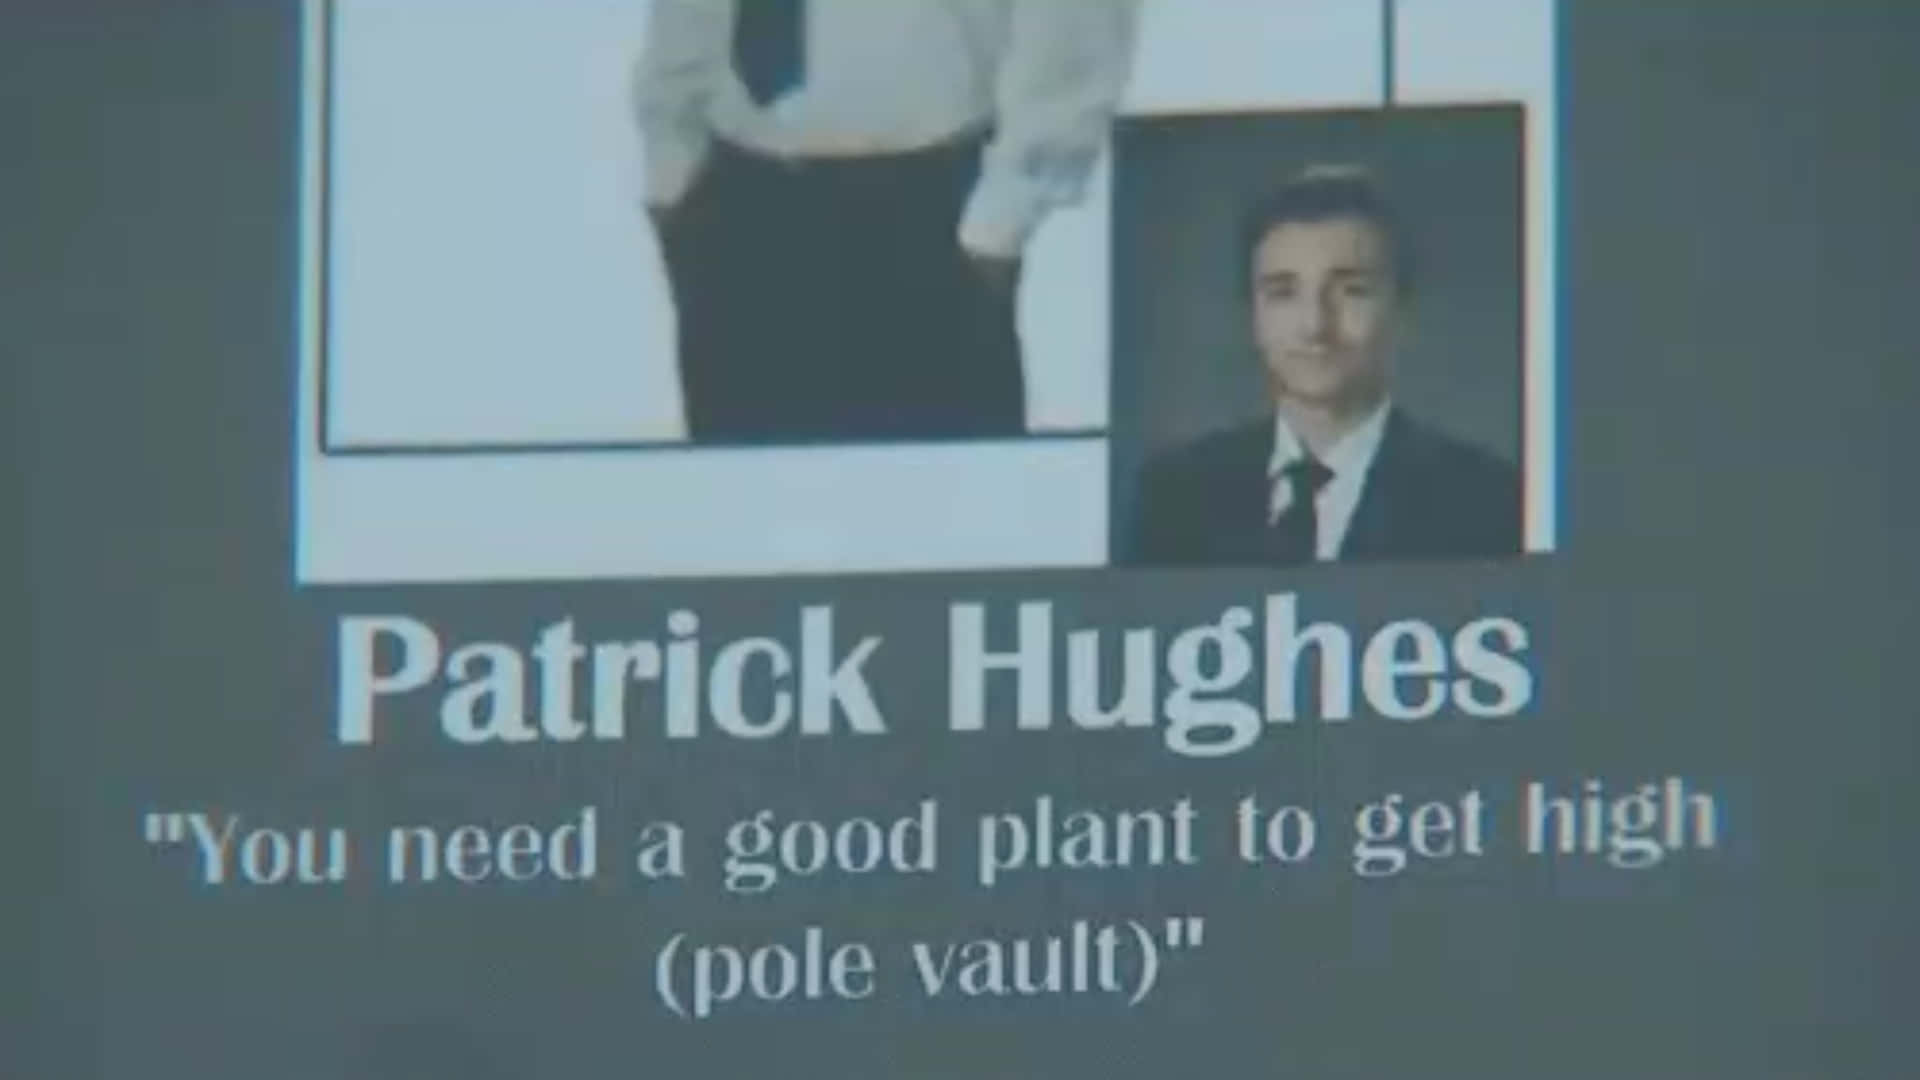 Patrickhughes, Du Brauchst Eine Gute Pflanze, Um Einen Hohen Noten-tresor Zu Erhalten.